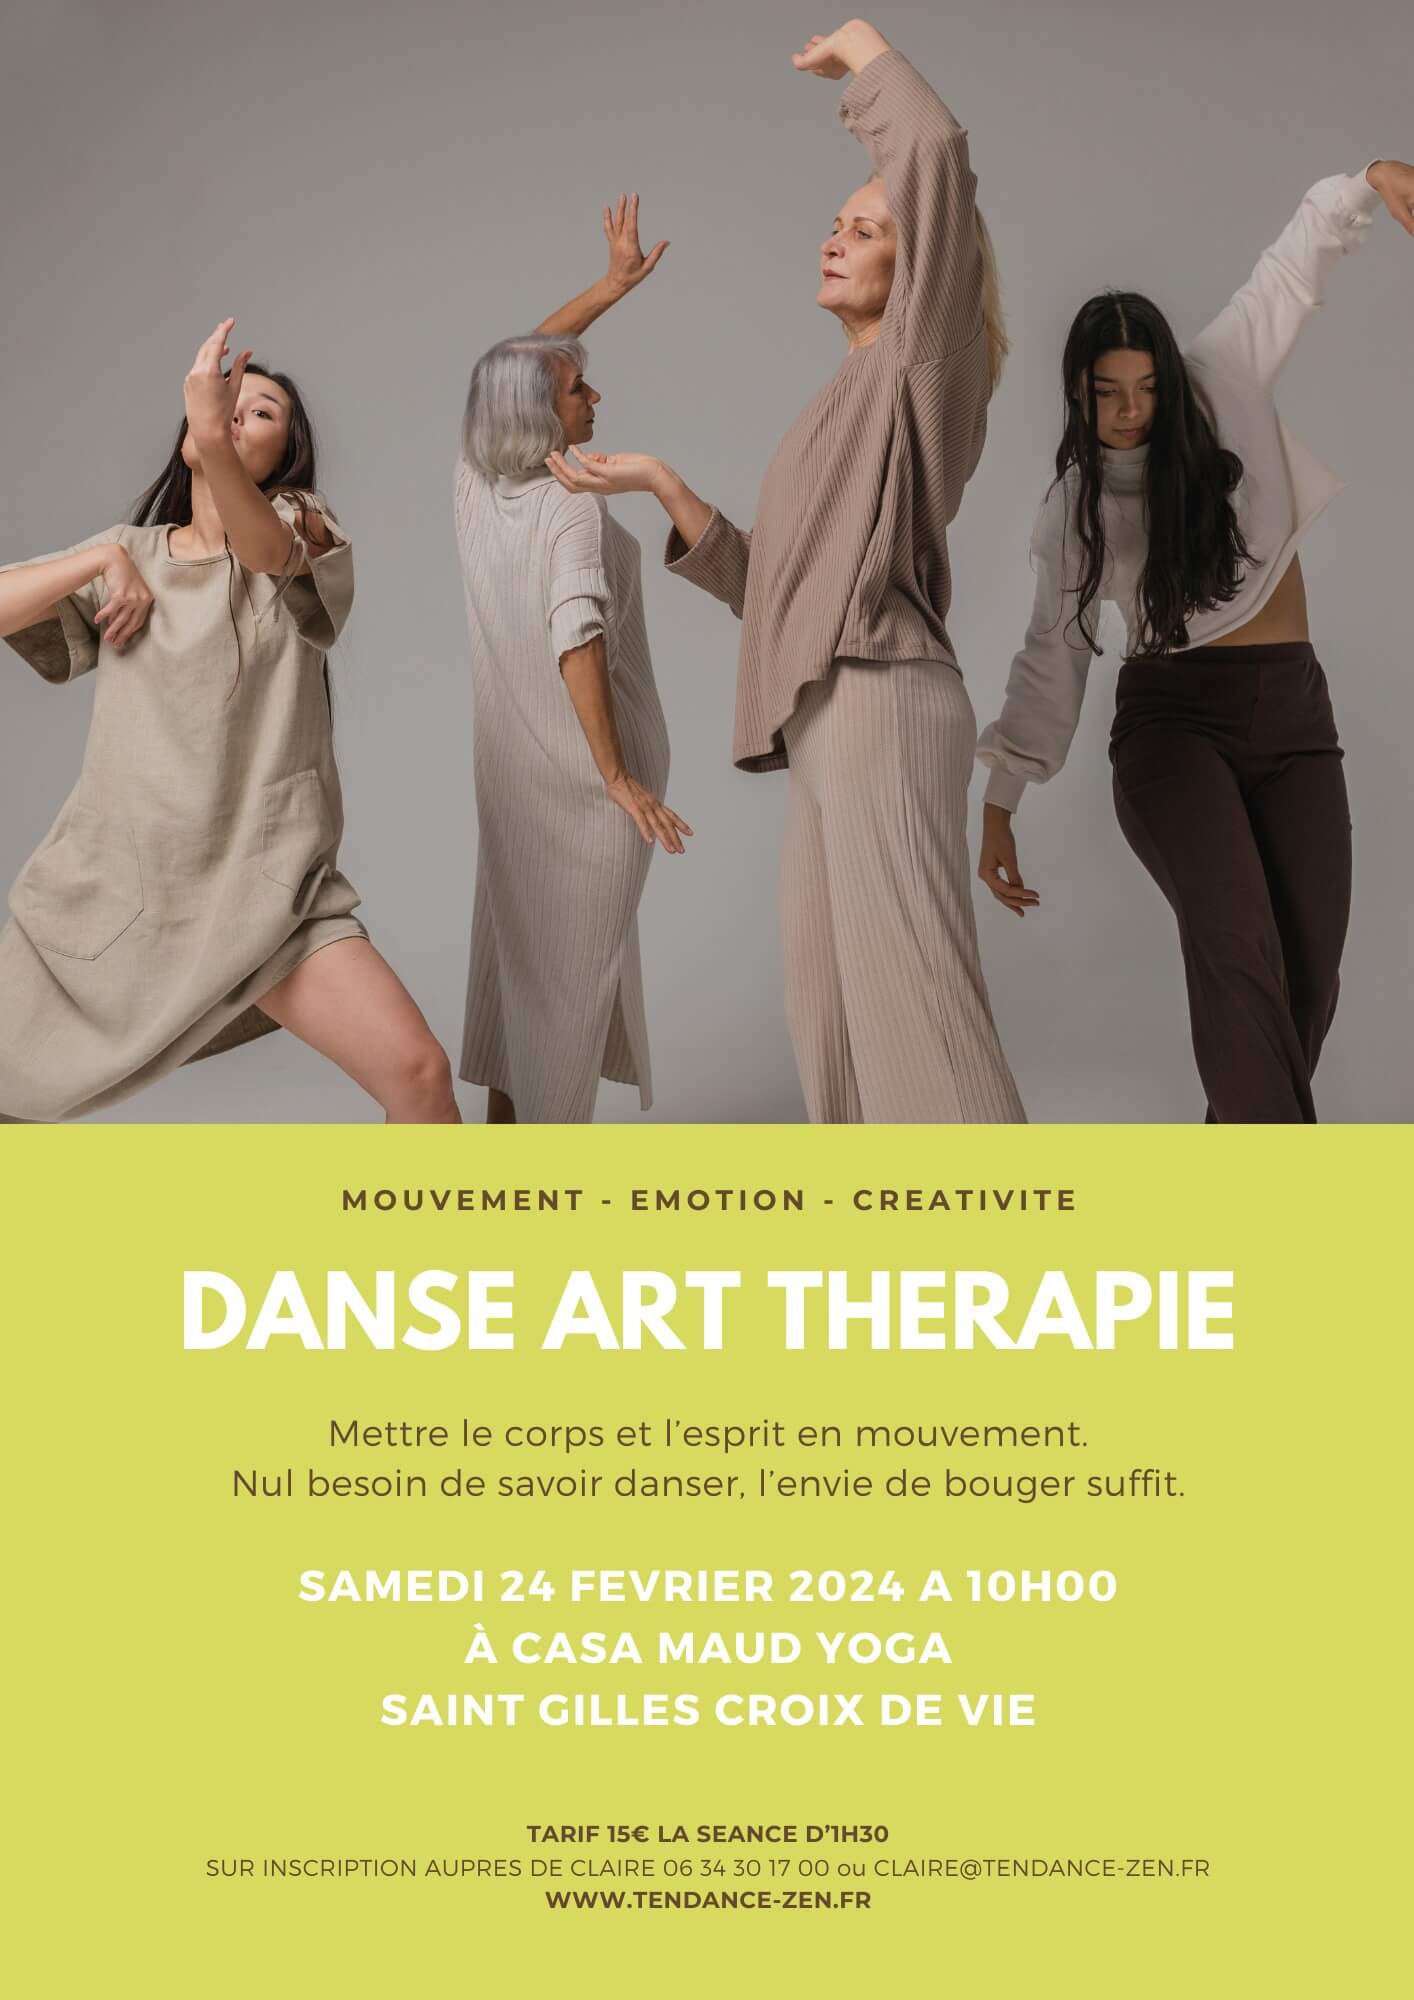 Atelier de danse art thérapie en 2024 à Saint Gilles Croix de Vie, en Vendée, avec Claire Moquet, spécialiste du bien-être.